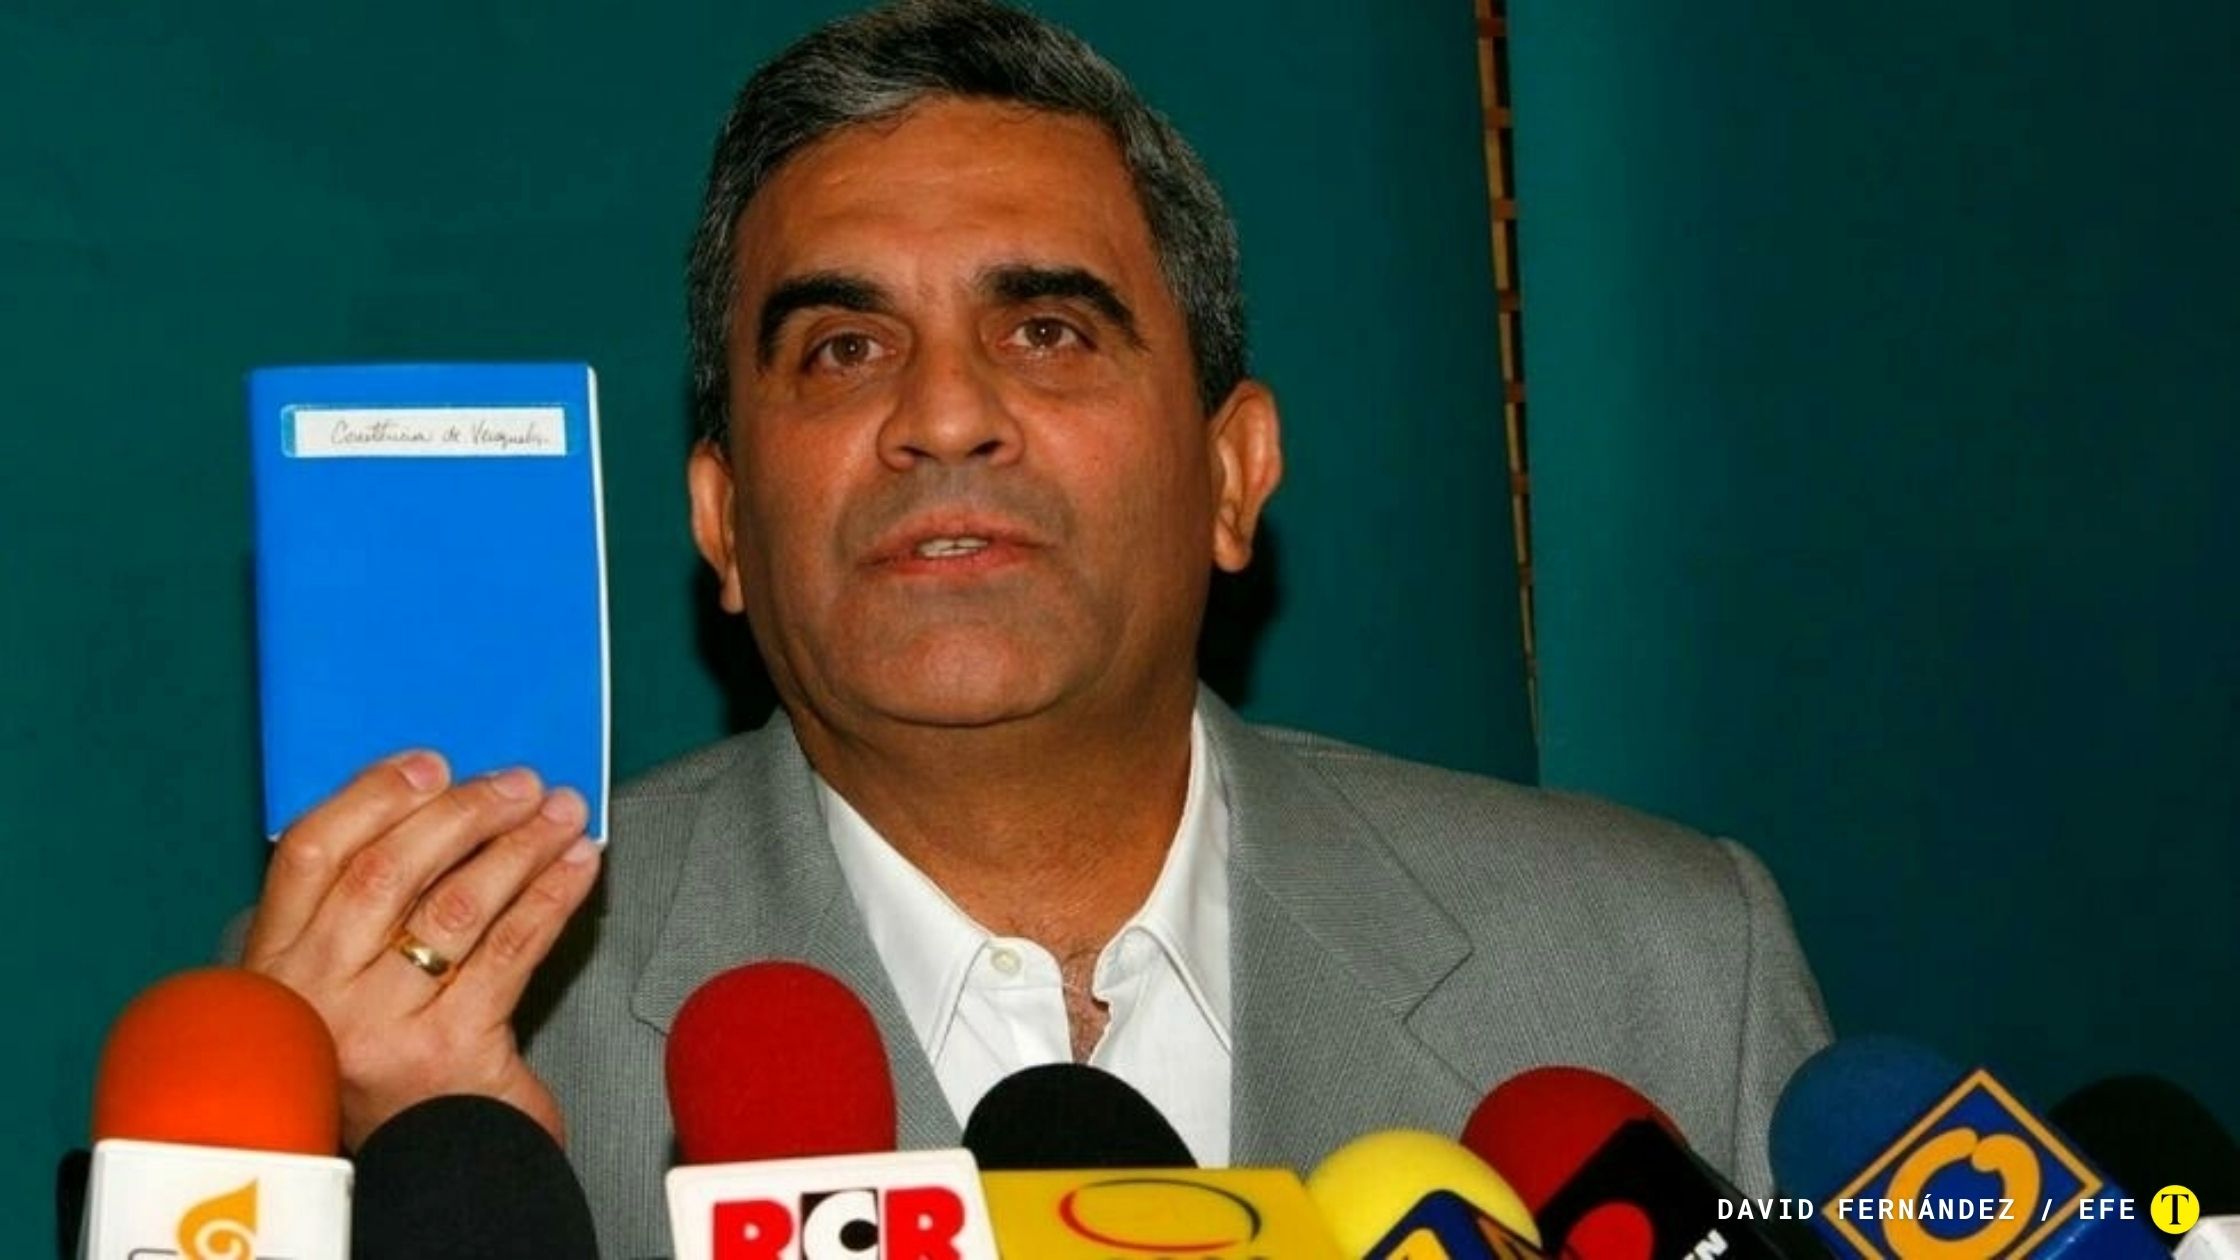 Fotografía de archivo fechada el 6 de diciembre de 2007 que muestra al General venezolano Raul Isaías Baduel durante una rueda de prensa sobre los resultados del referendum constitucional, en Caracas, Venezuela. Foto: David Fernández / EFE